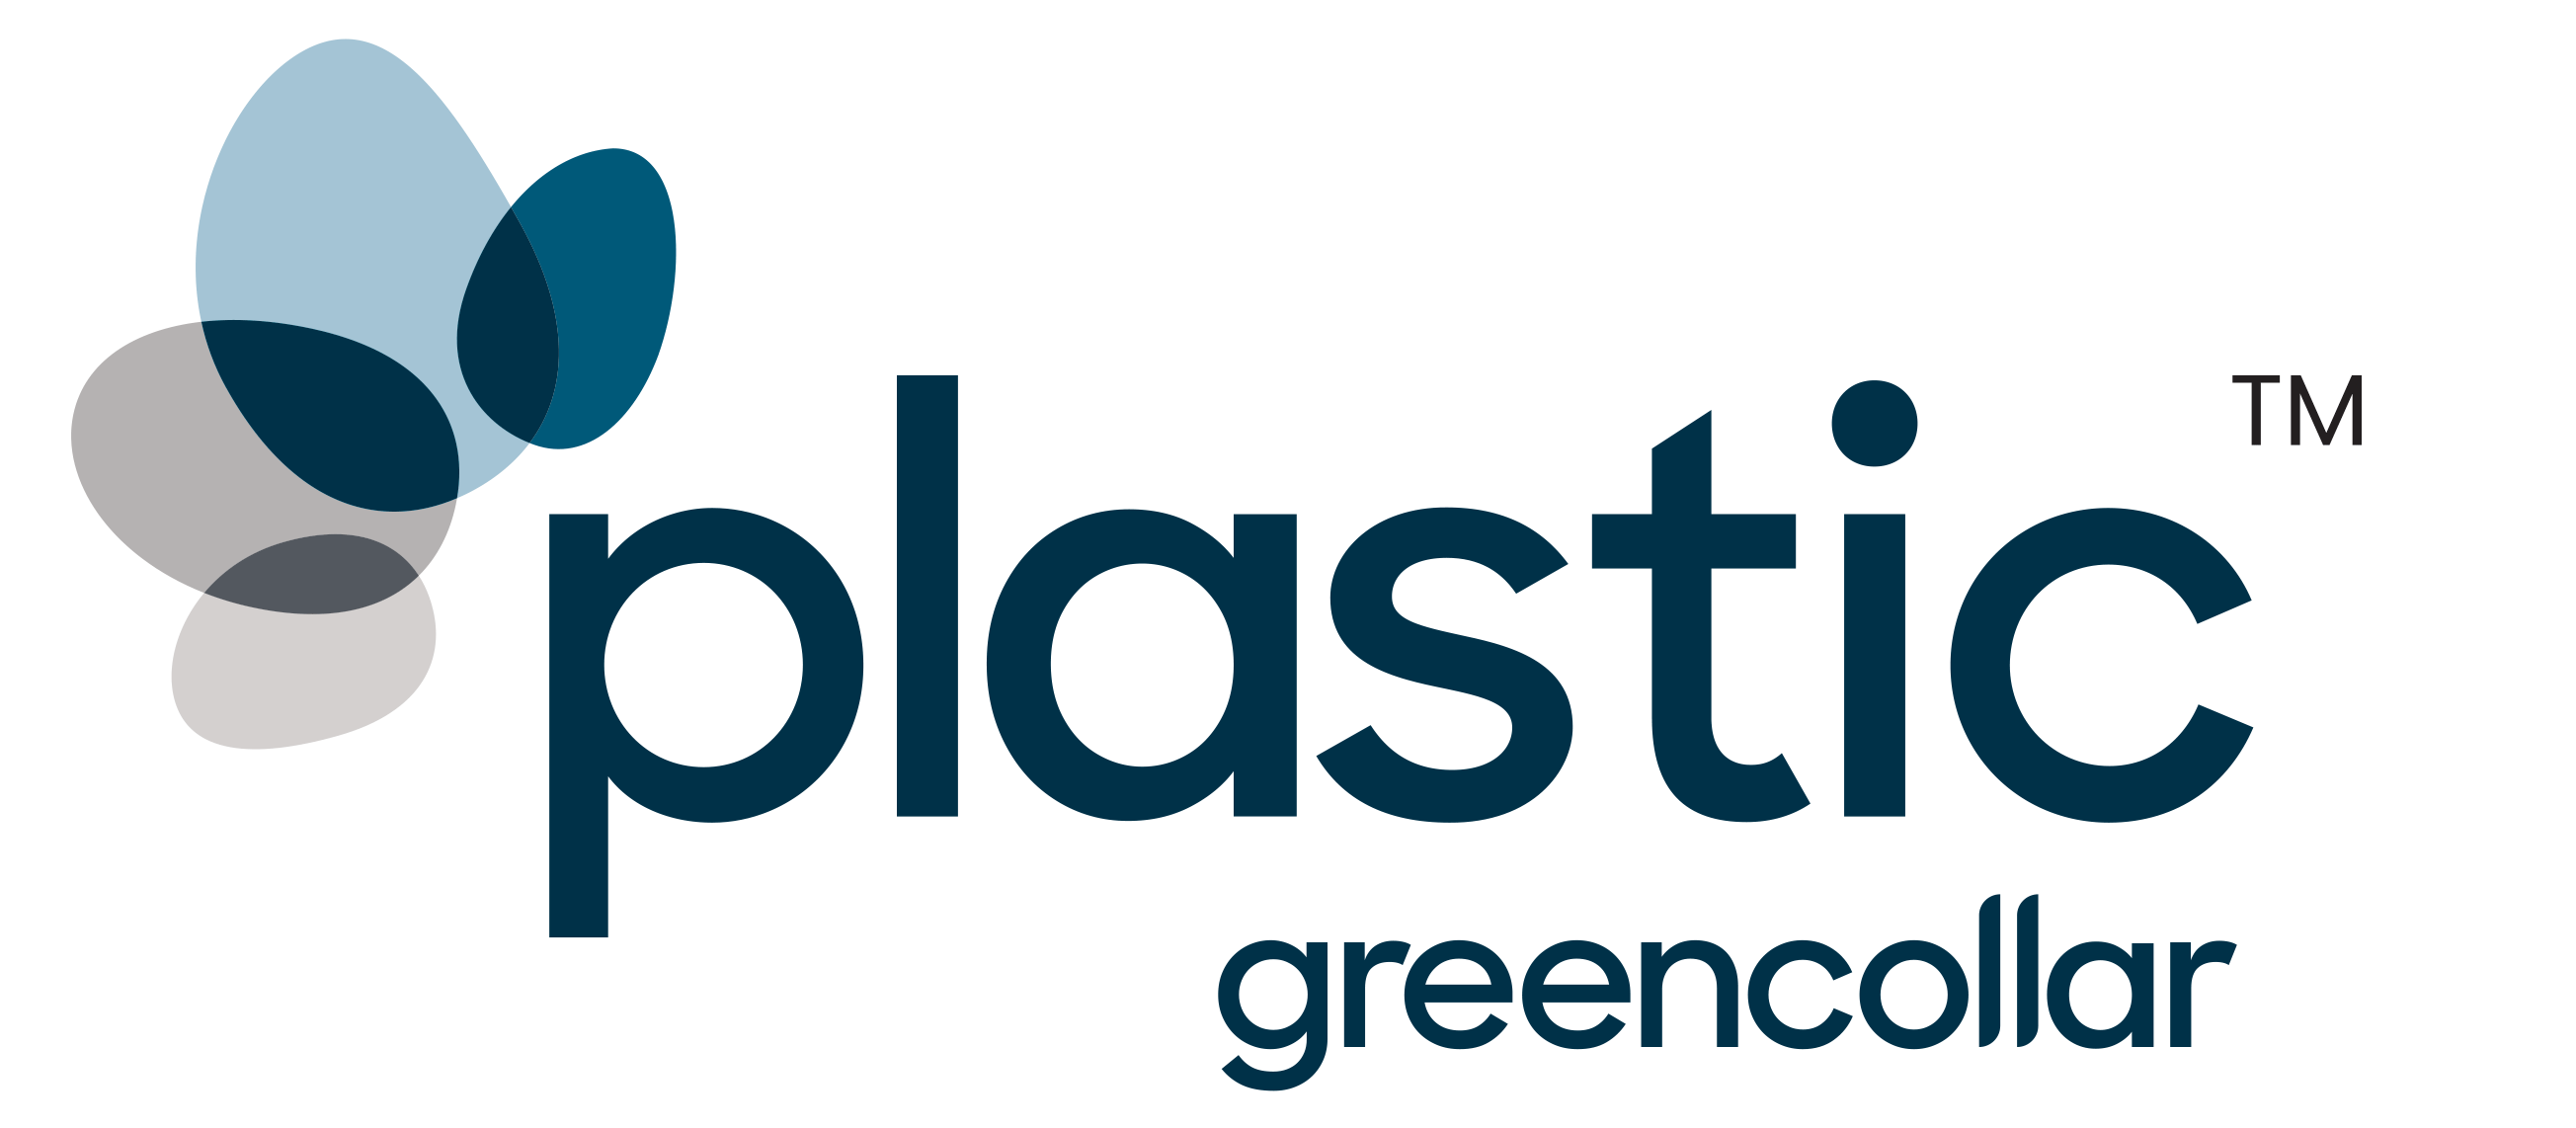 greencollar plastics logo TM